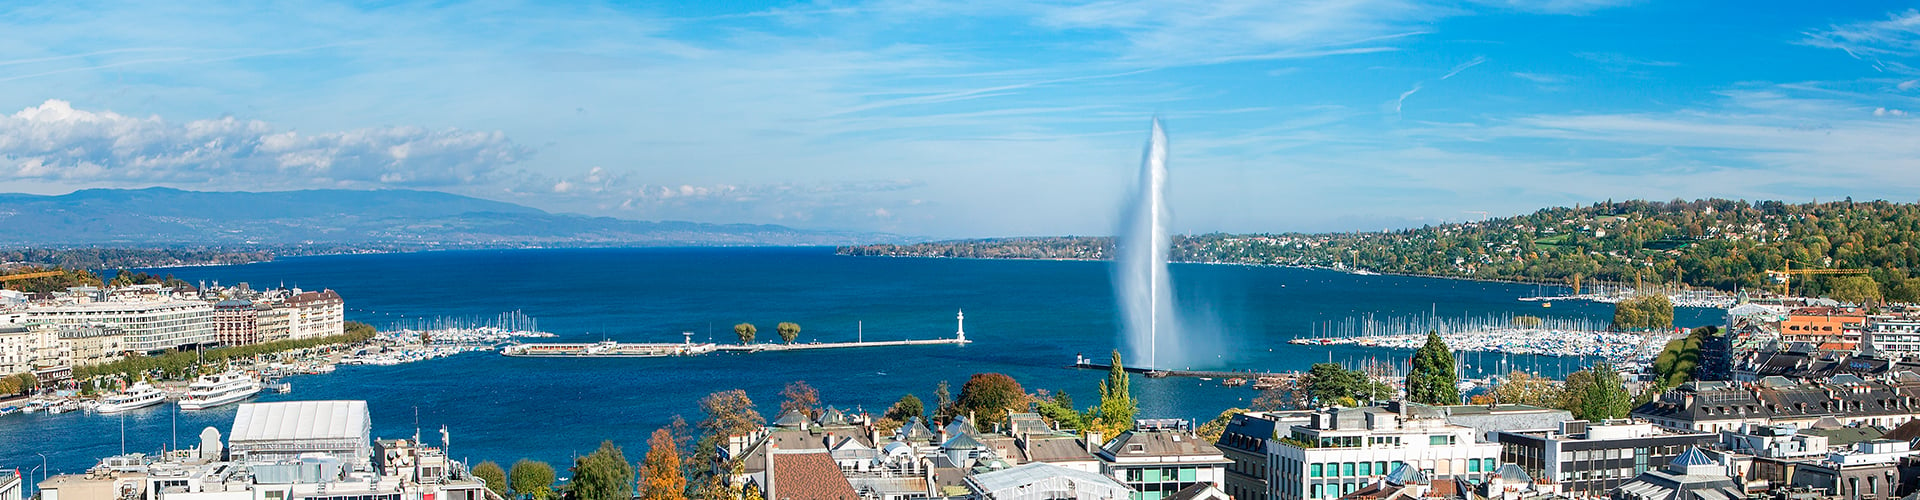 Geneva ocean view